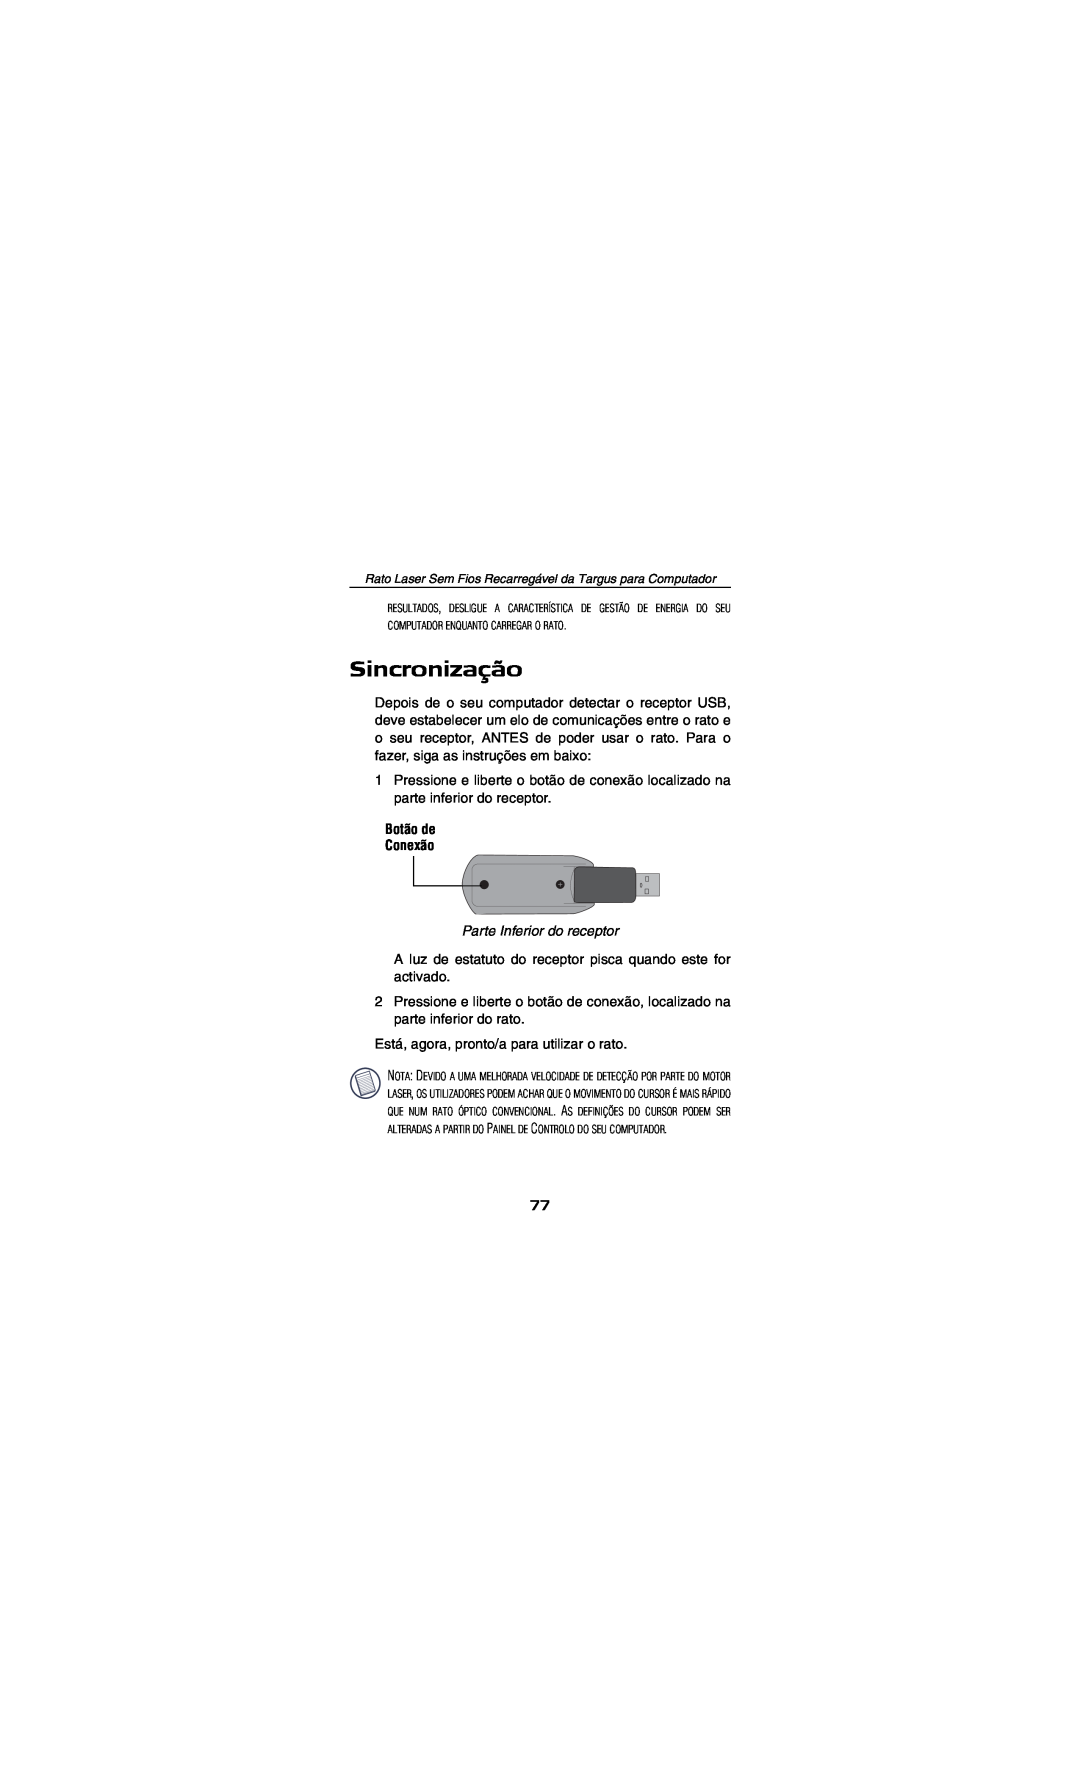 Targus AMW15EU specifications Sincronização, Botão de Conexão, Parte Inferior do receptor 